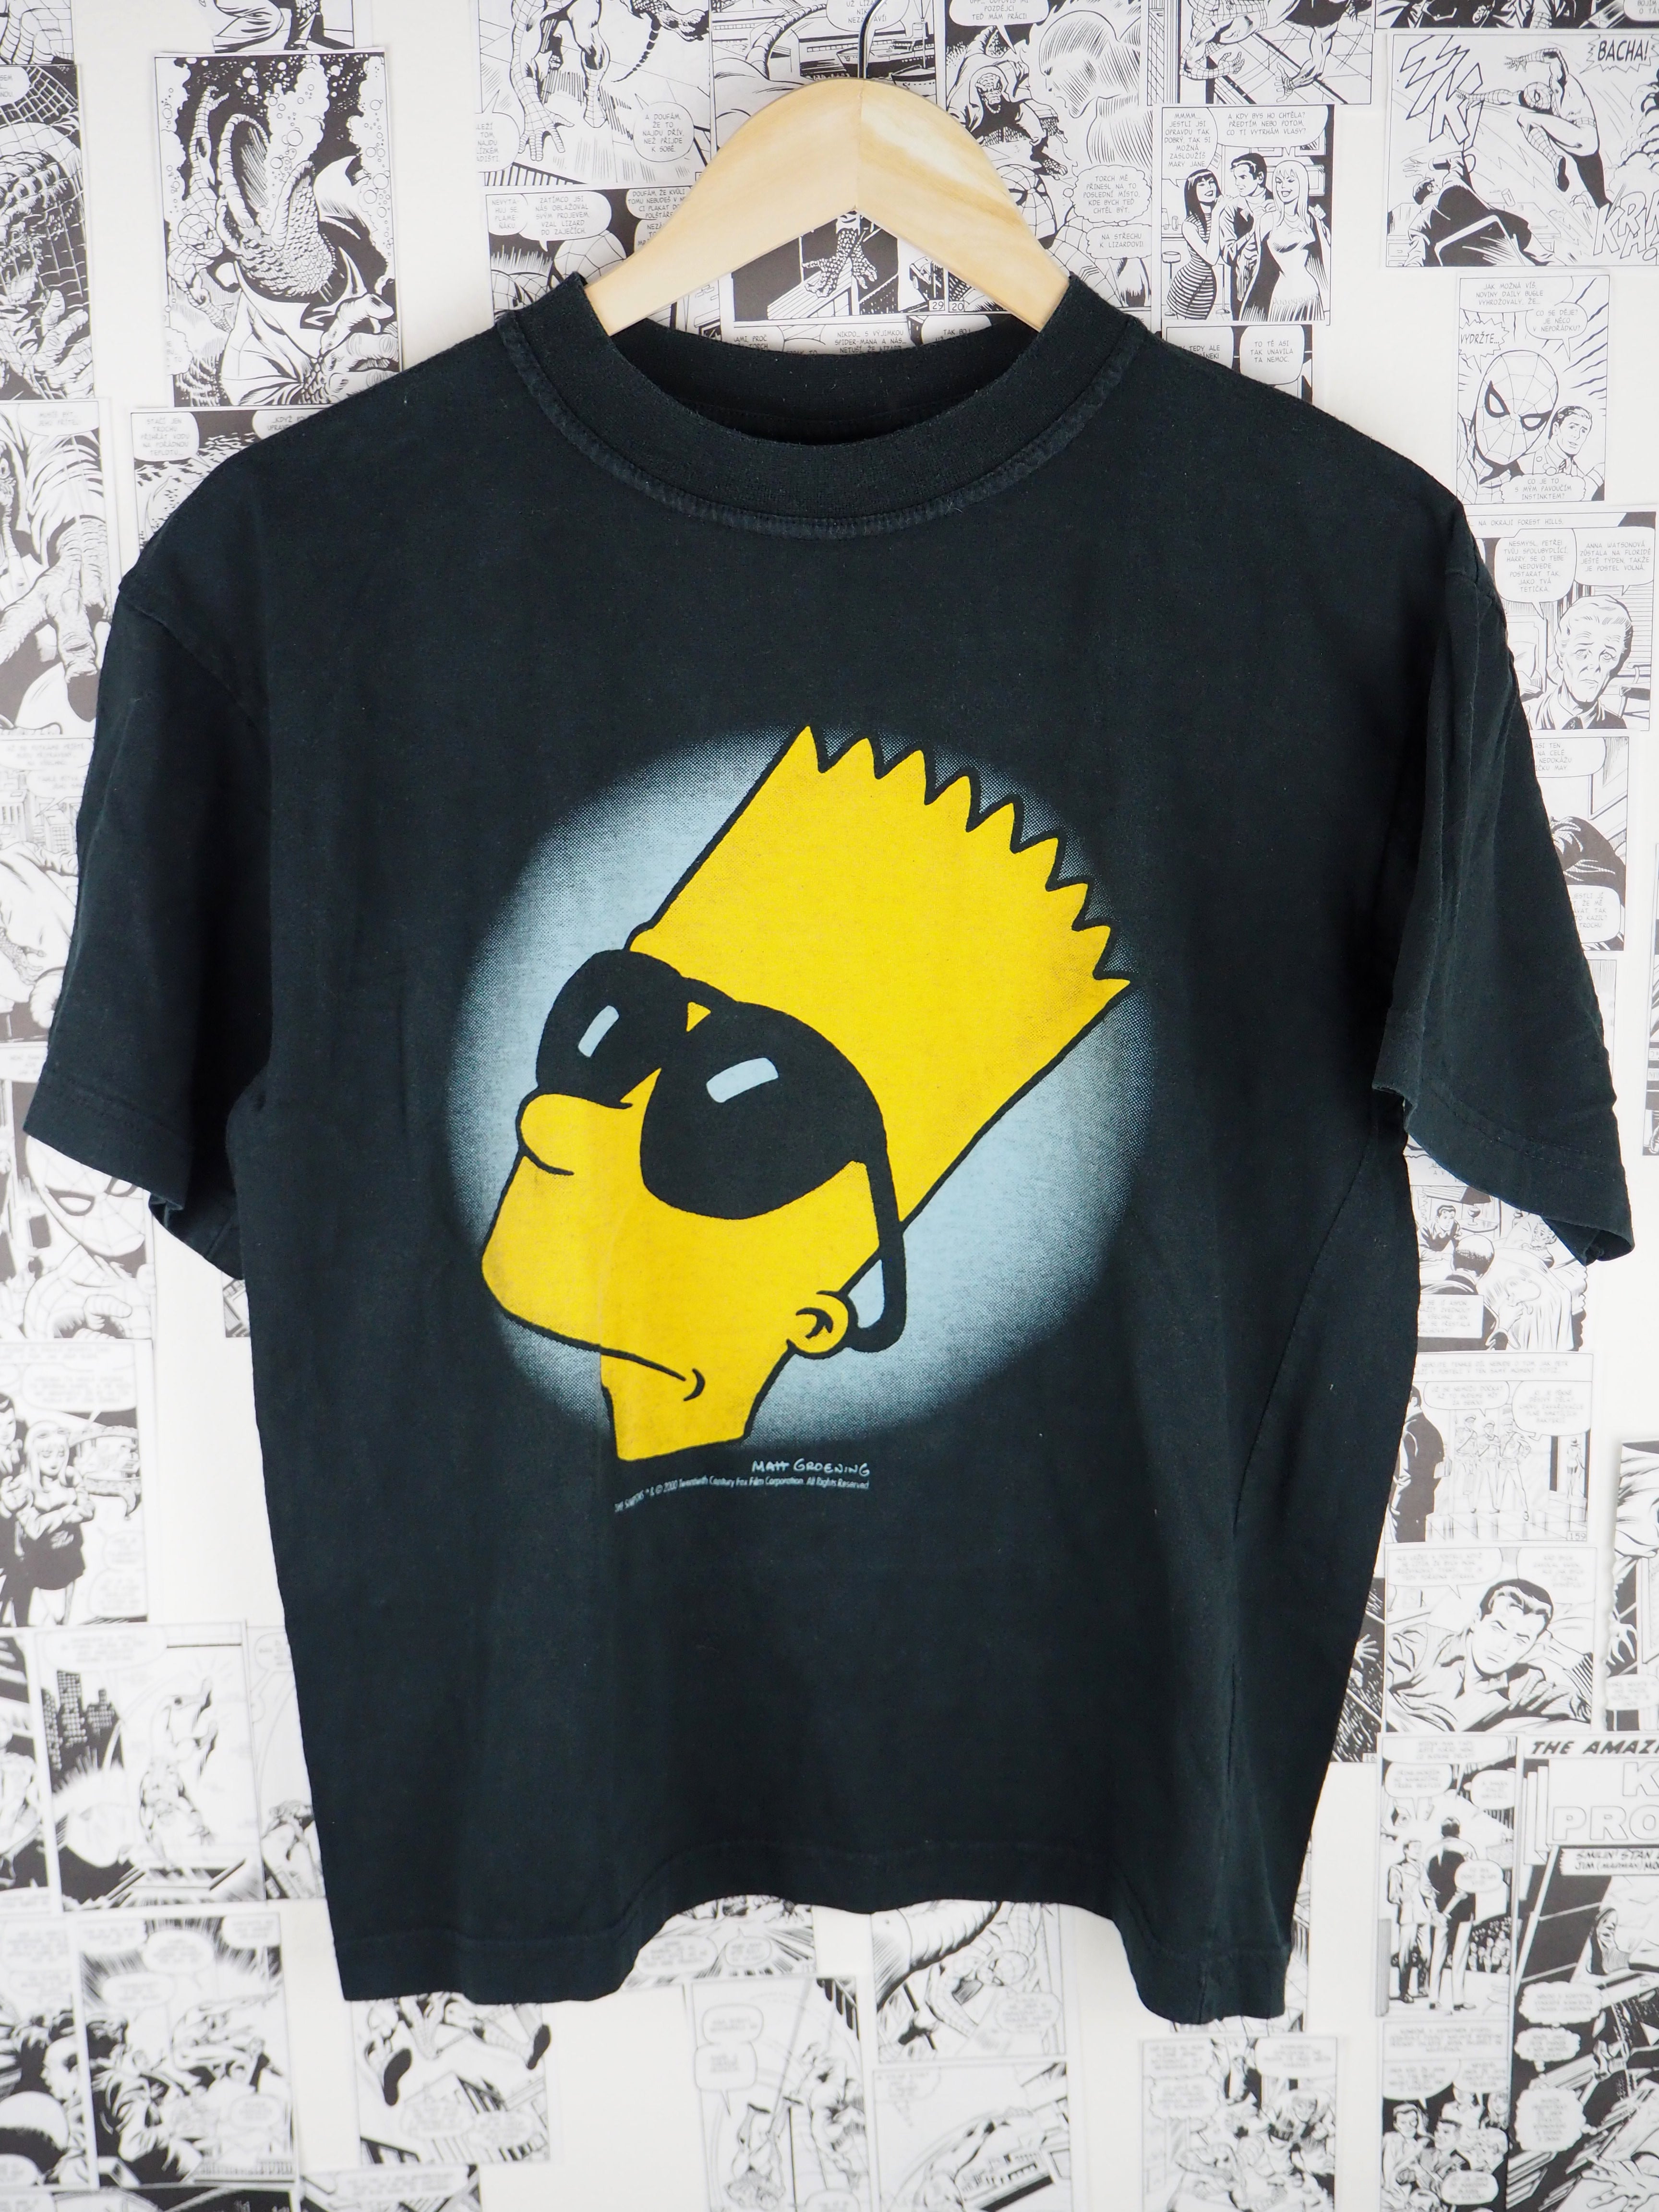 Vintage Bart Simpson 2000 t-shirt - size M